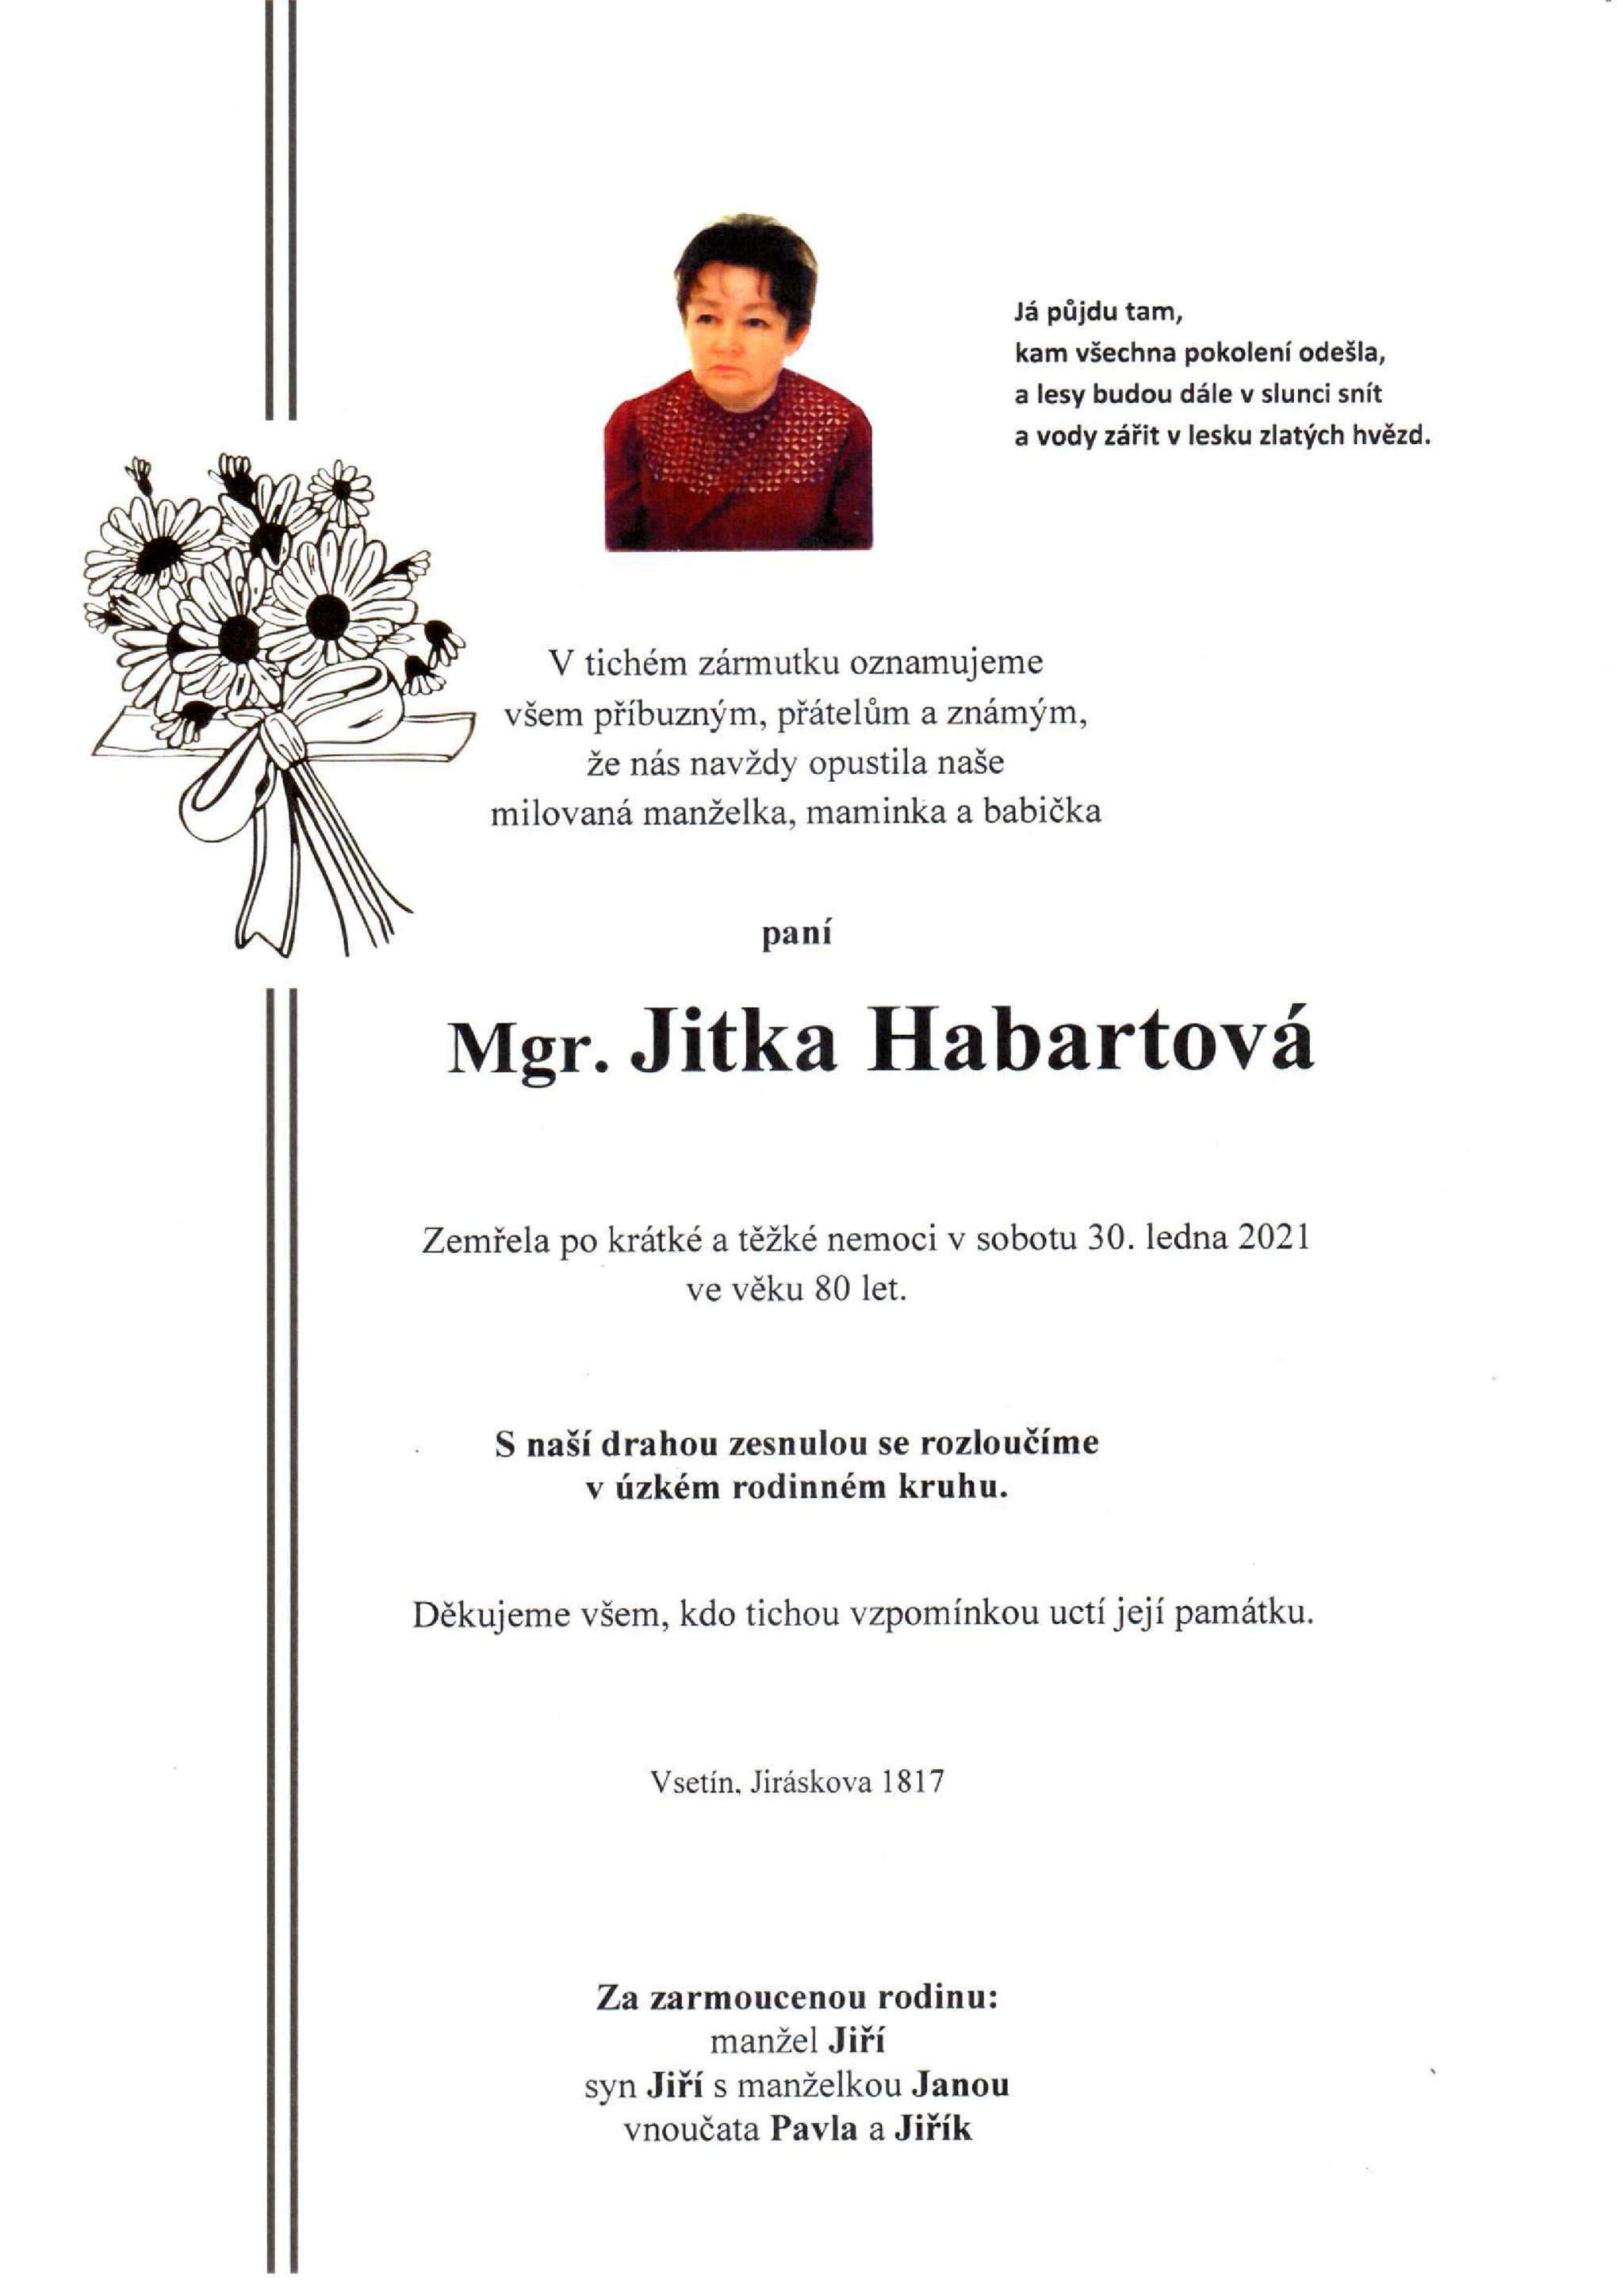 Mgr. Jitka Habartová